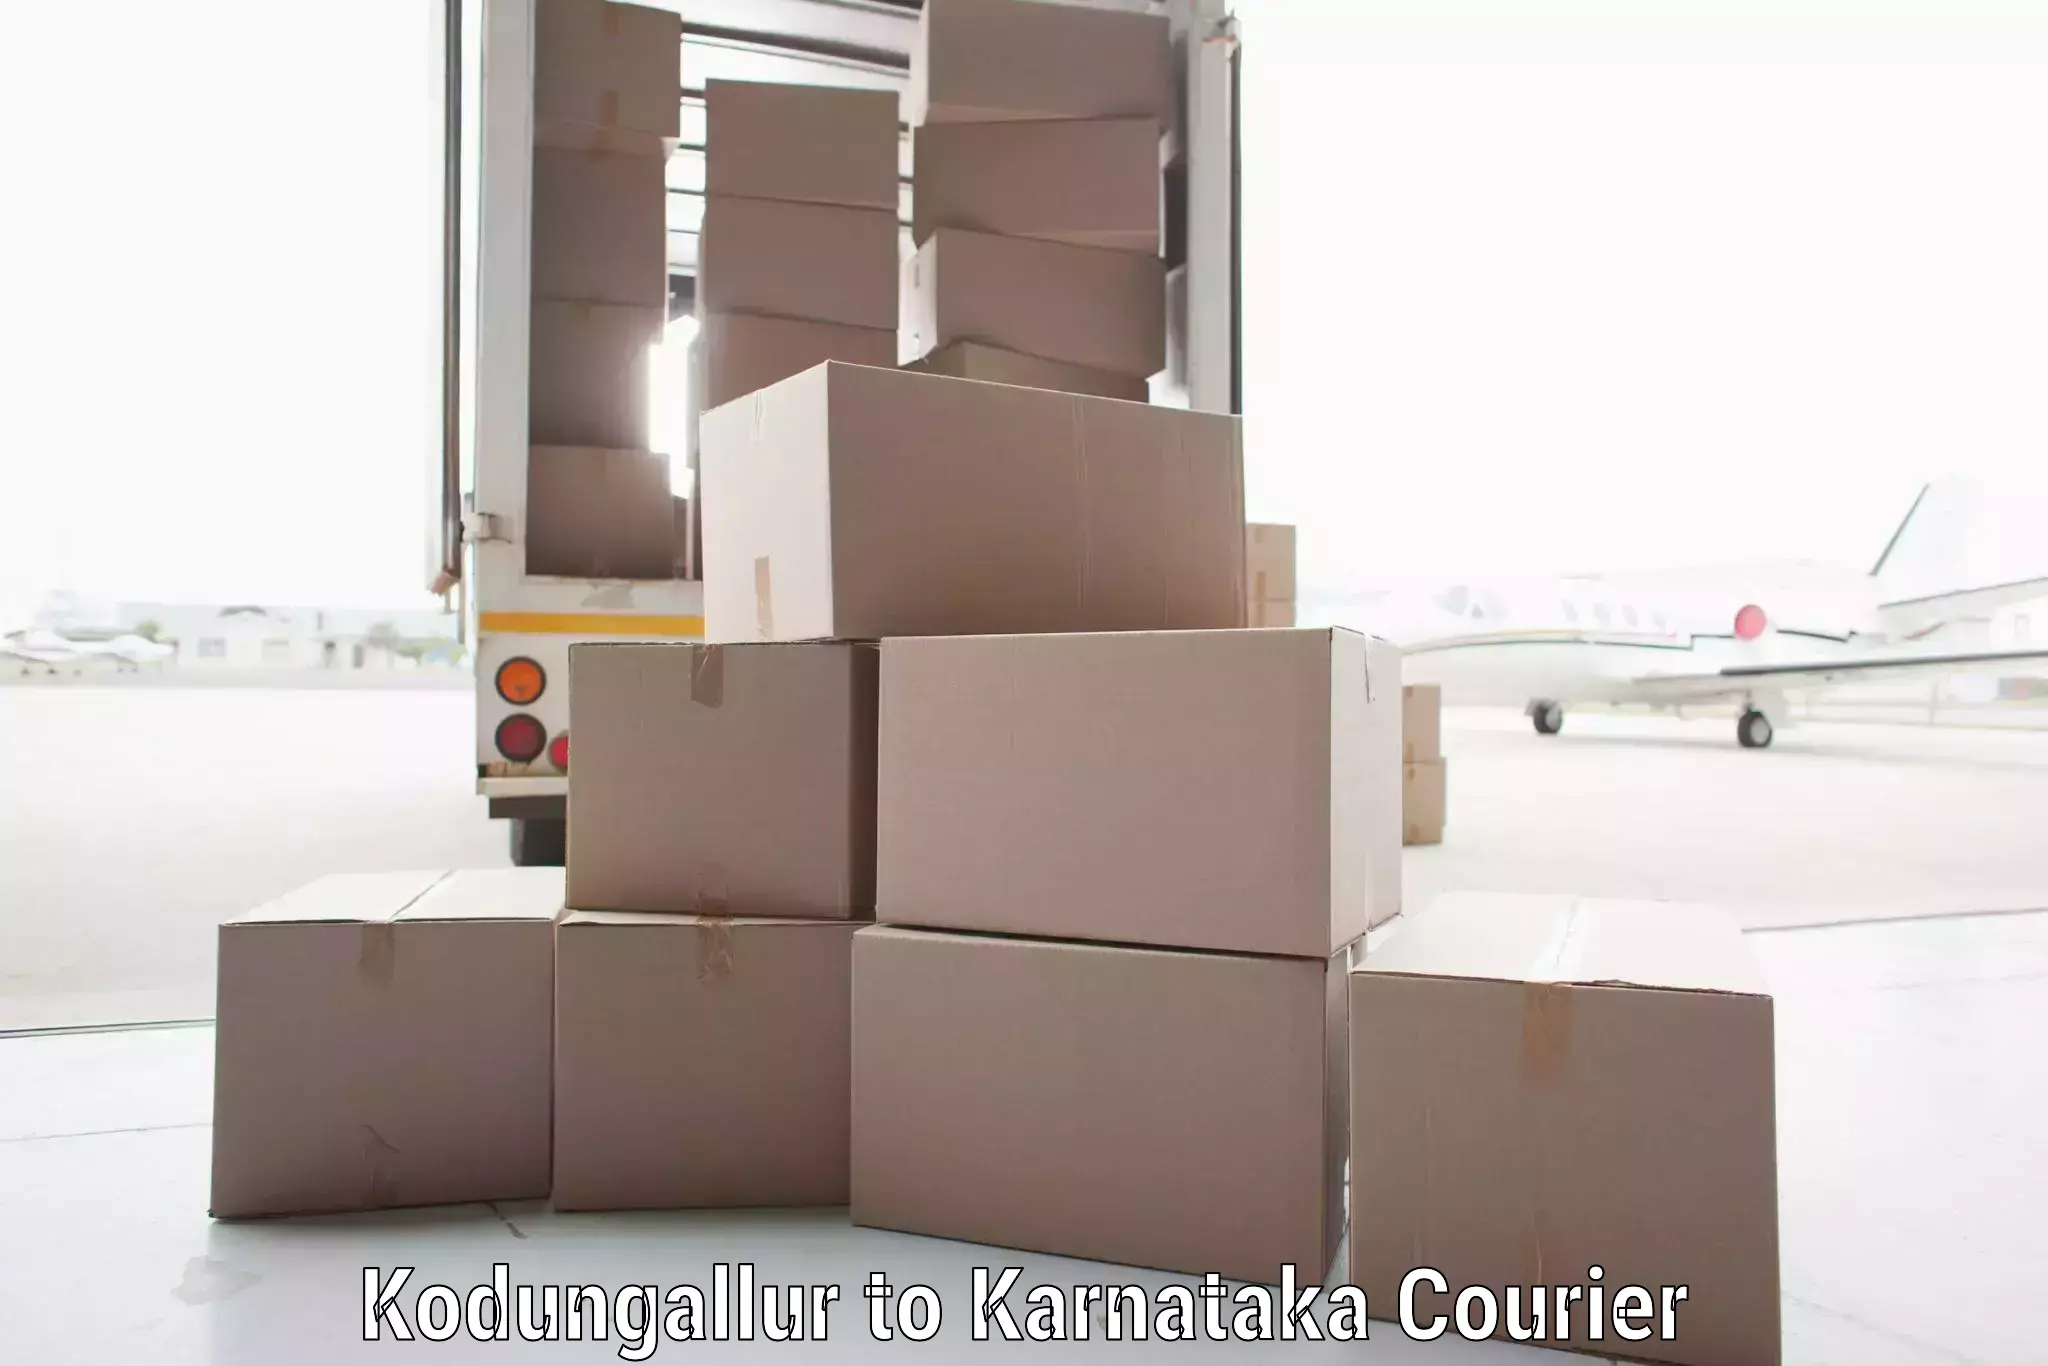 Courier service partnerships Kodungallur to Aland Kalaburagi